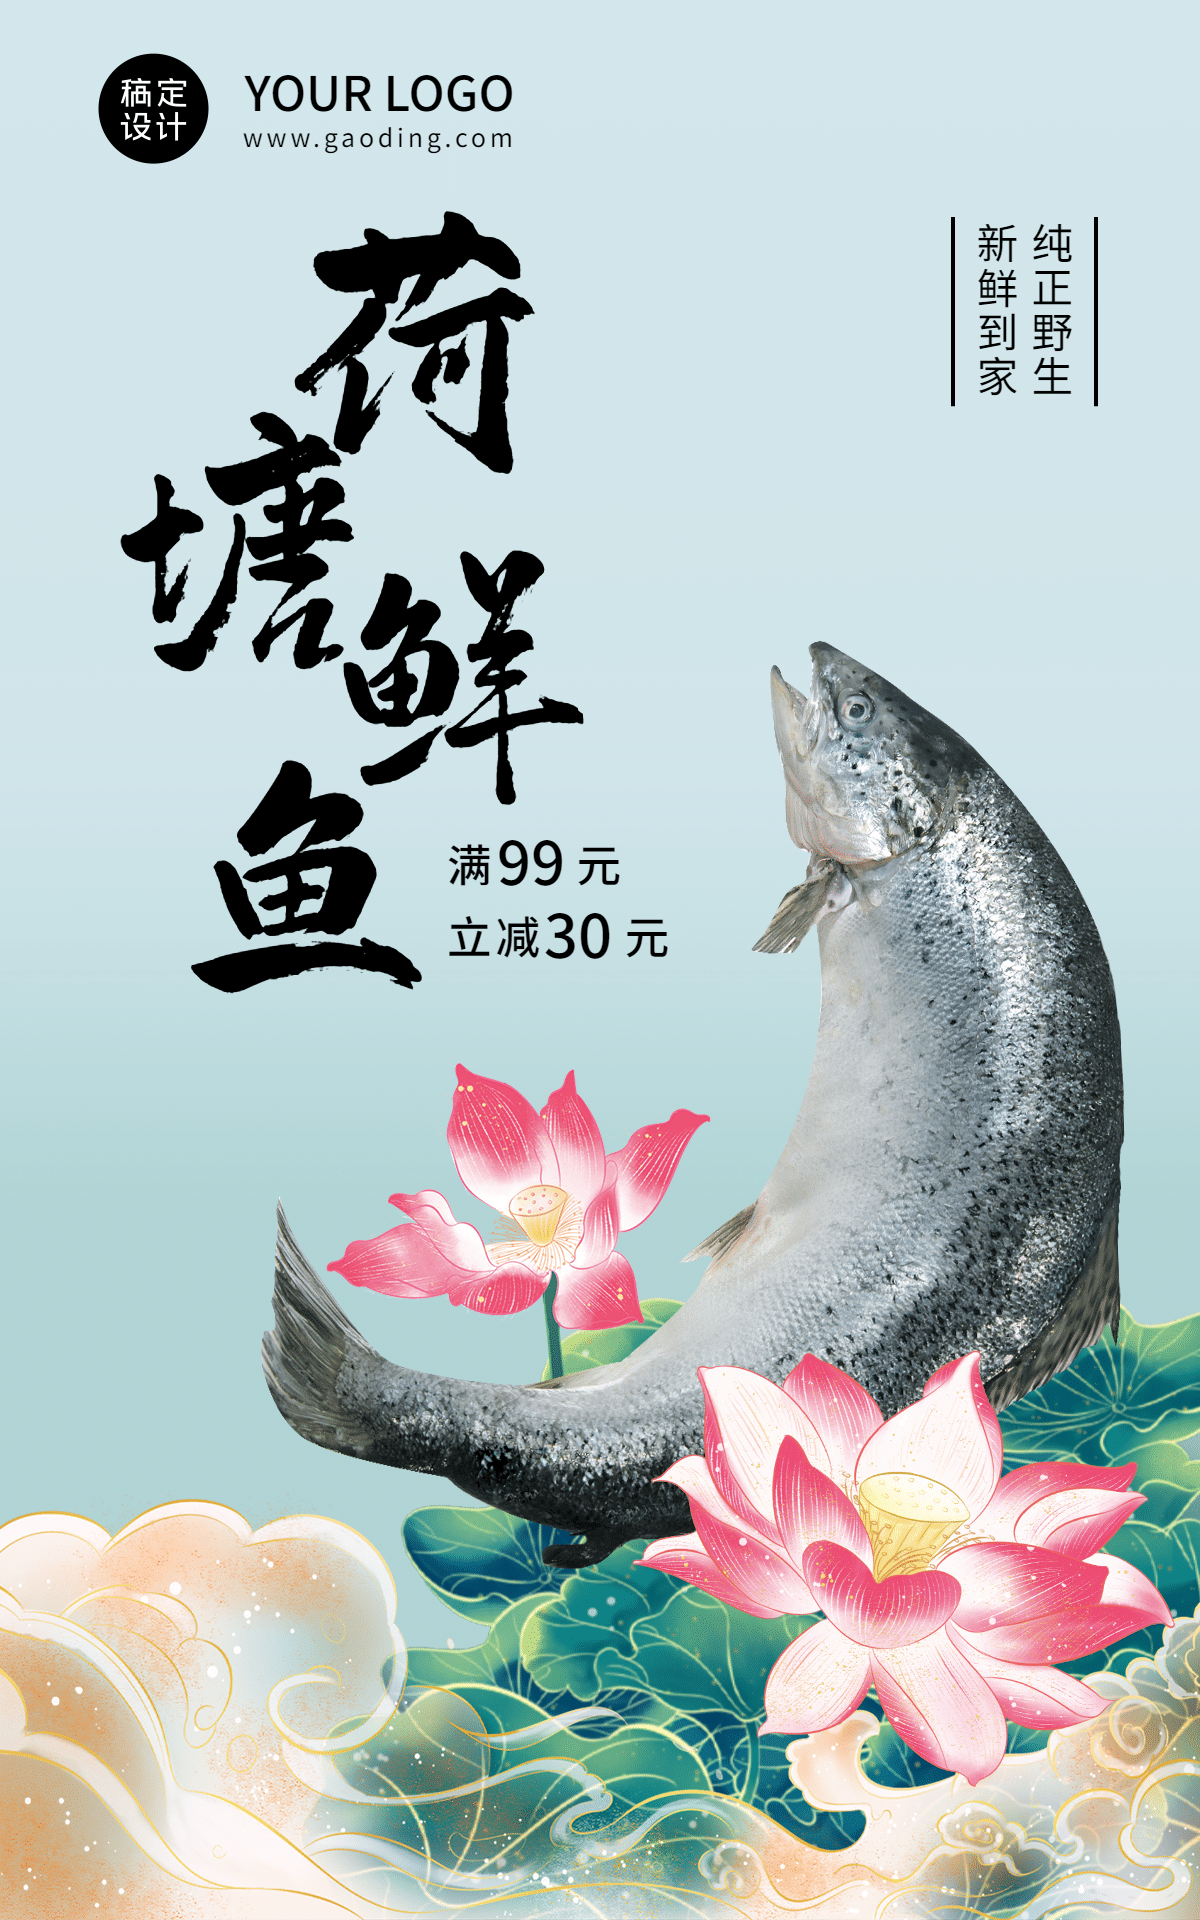 夏上新中国风生鲜海鲜鱼海报预览效果